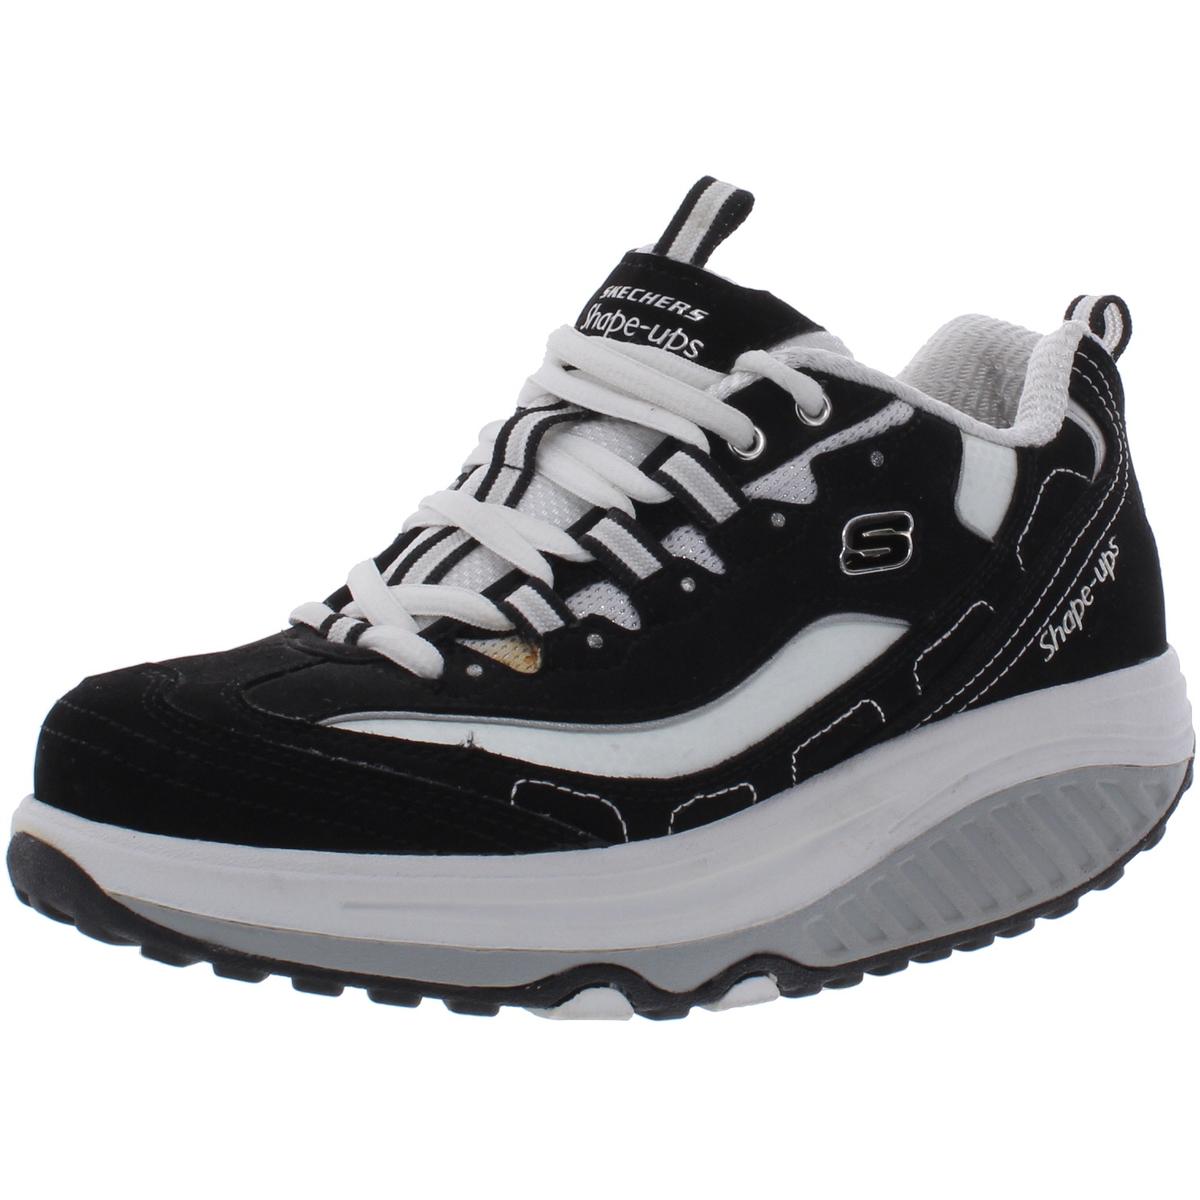 Skechers Womens Strength Black Walking Shoes Sneakers 6 Medium (B,M ...